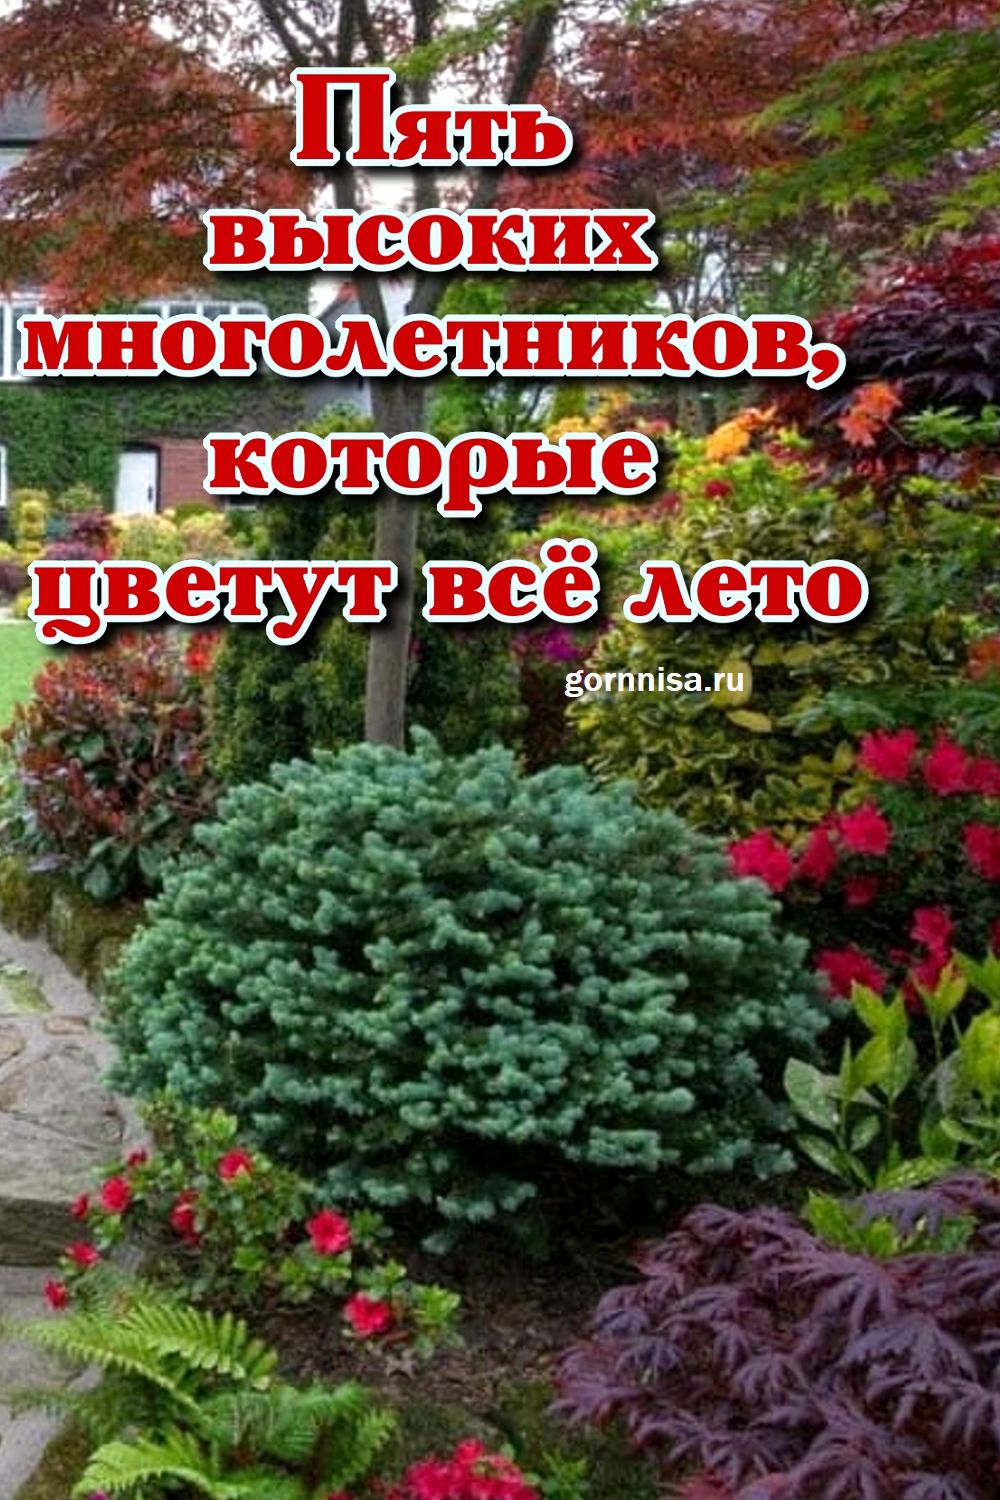 Пять высоких многолетников, которые цветут всё лето gornnisa.ru/